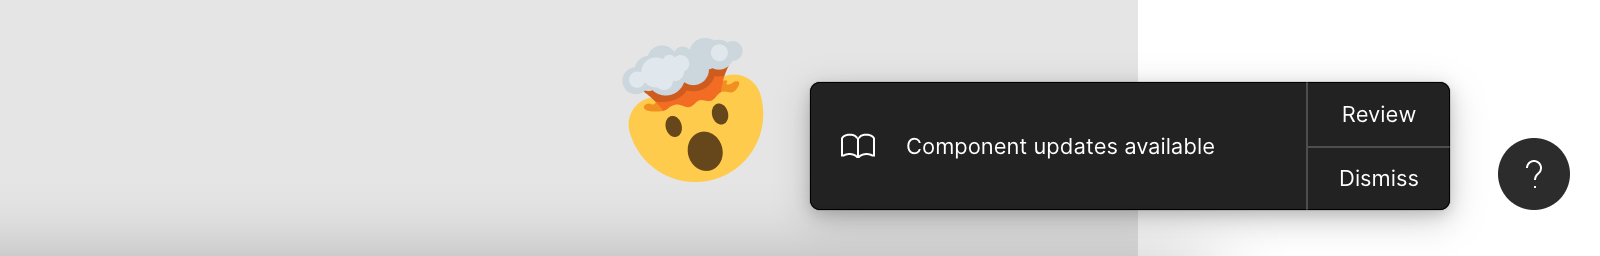 Skjermbilde av oppdateringsdialogen i Figma, med en 🤯 emoji-reaksjon